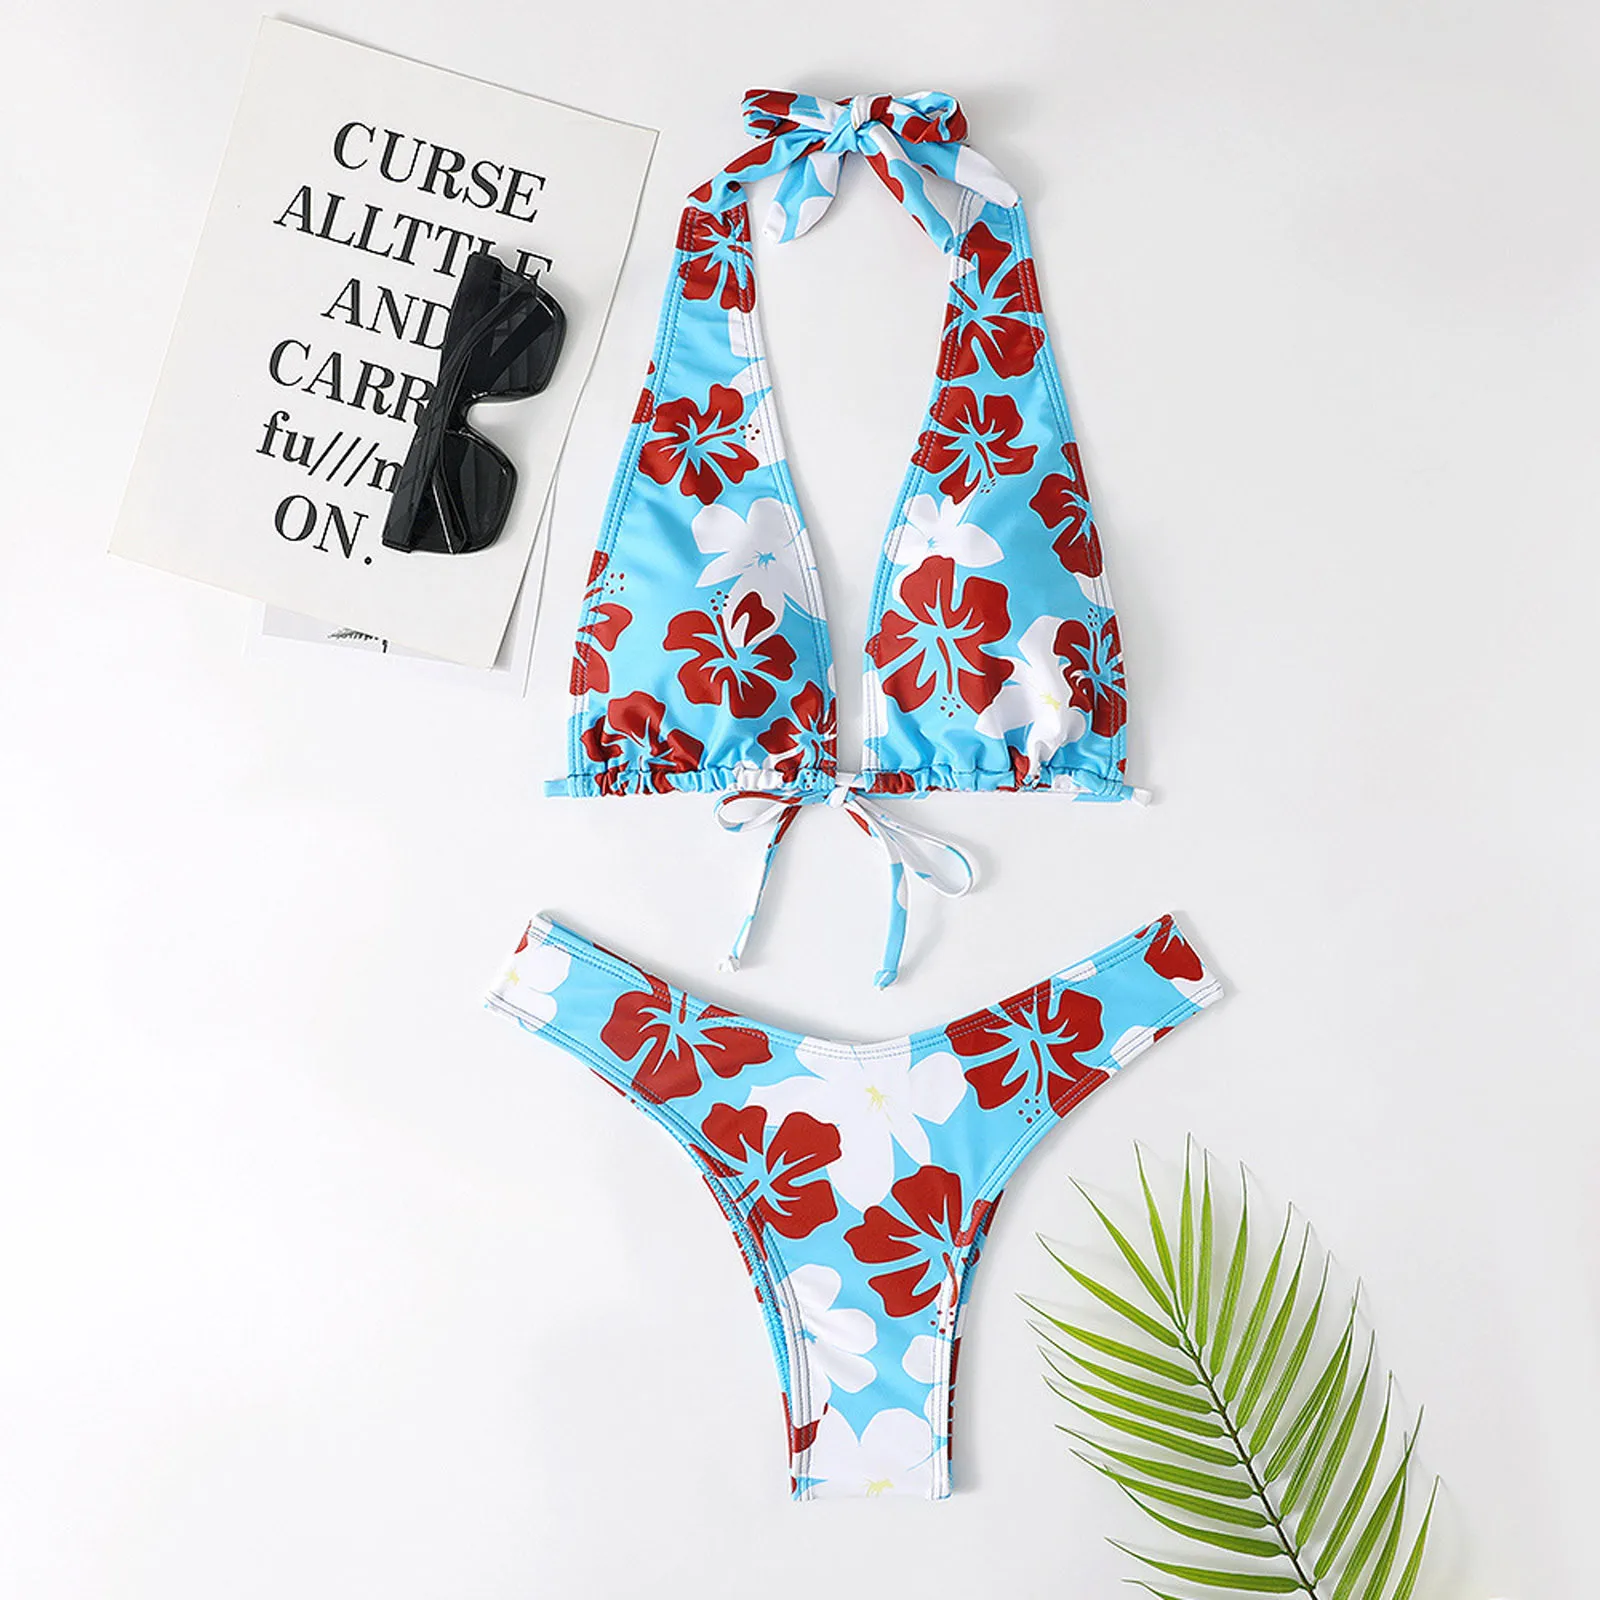 Tanie Damski strój kąpielowy seksowny kwiatowy Print bandaż strój kąpielowy 2 sztuka strój sklep